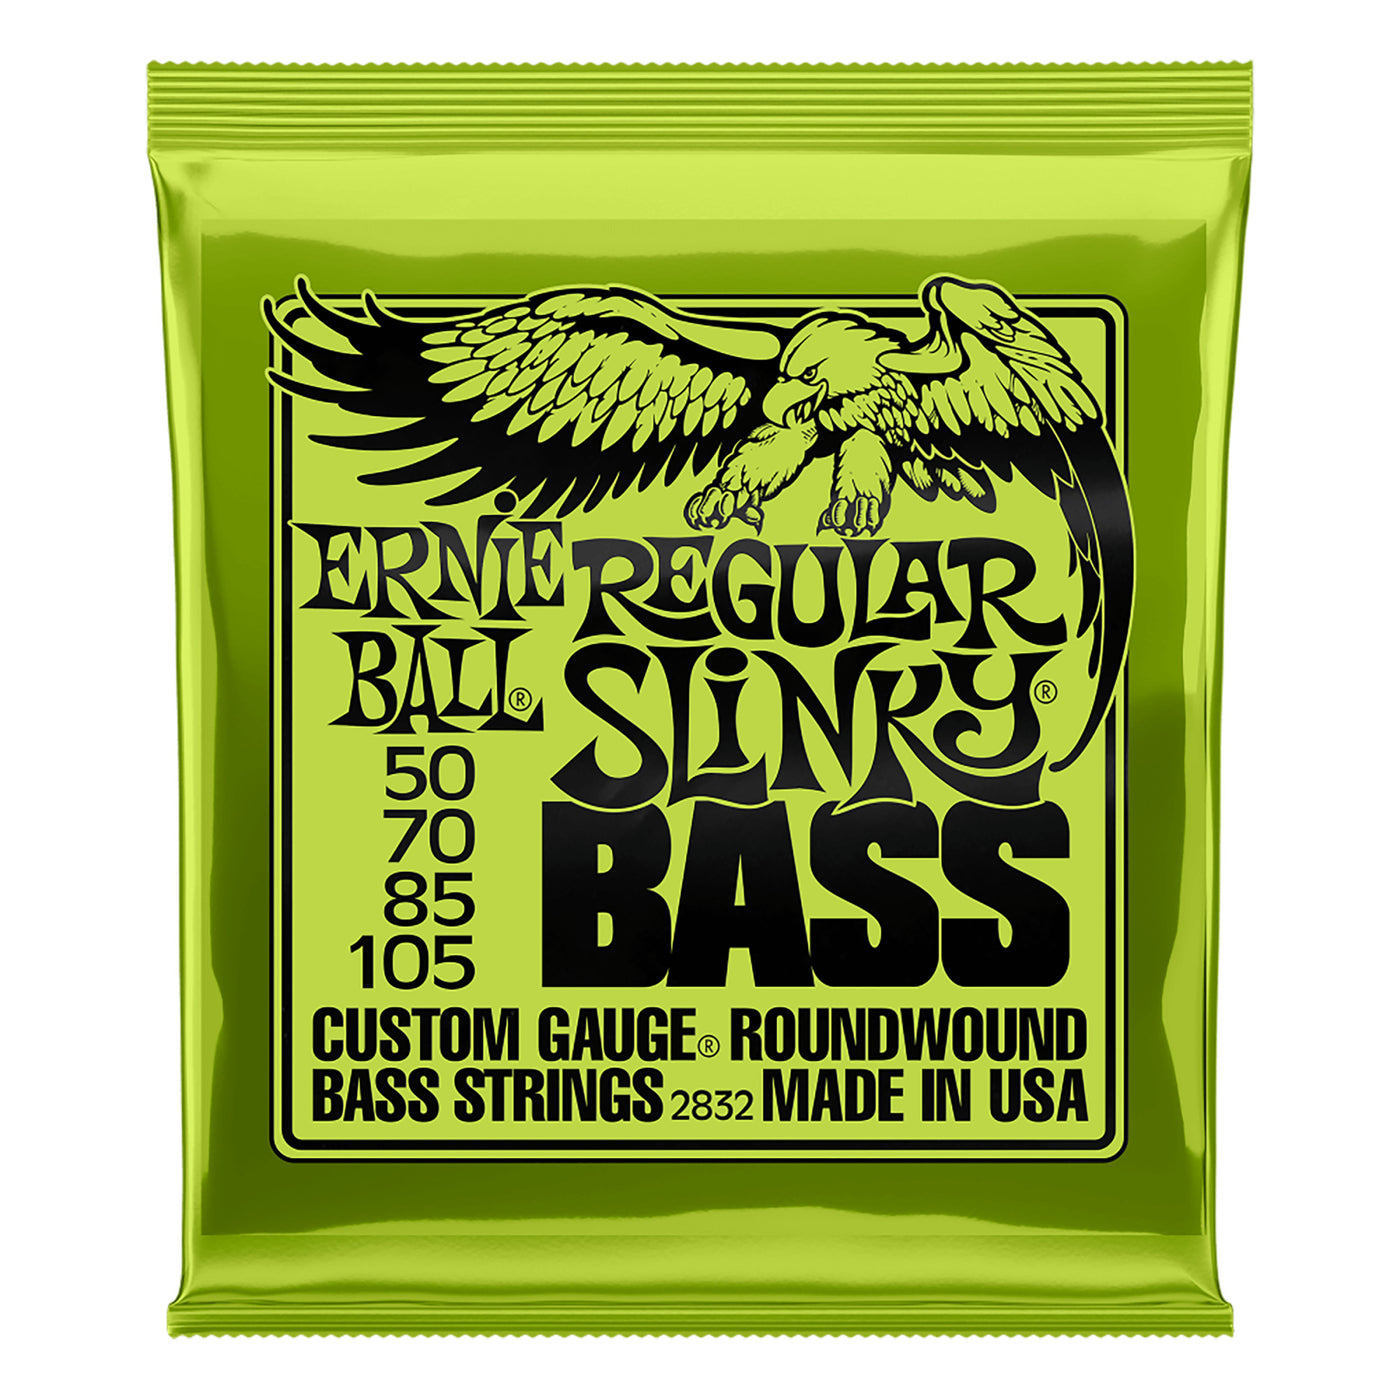 Ernie Ball Regular Slinky Nickel Wound Electric Bass Strings, 50-105 Gauge- 4 Strings